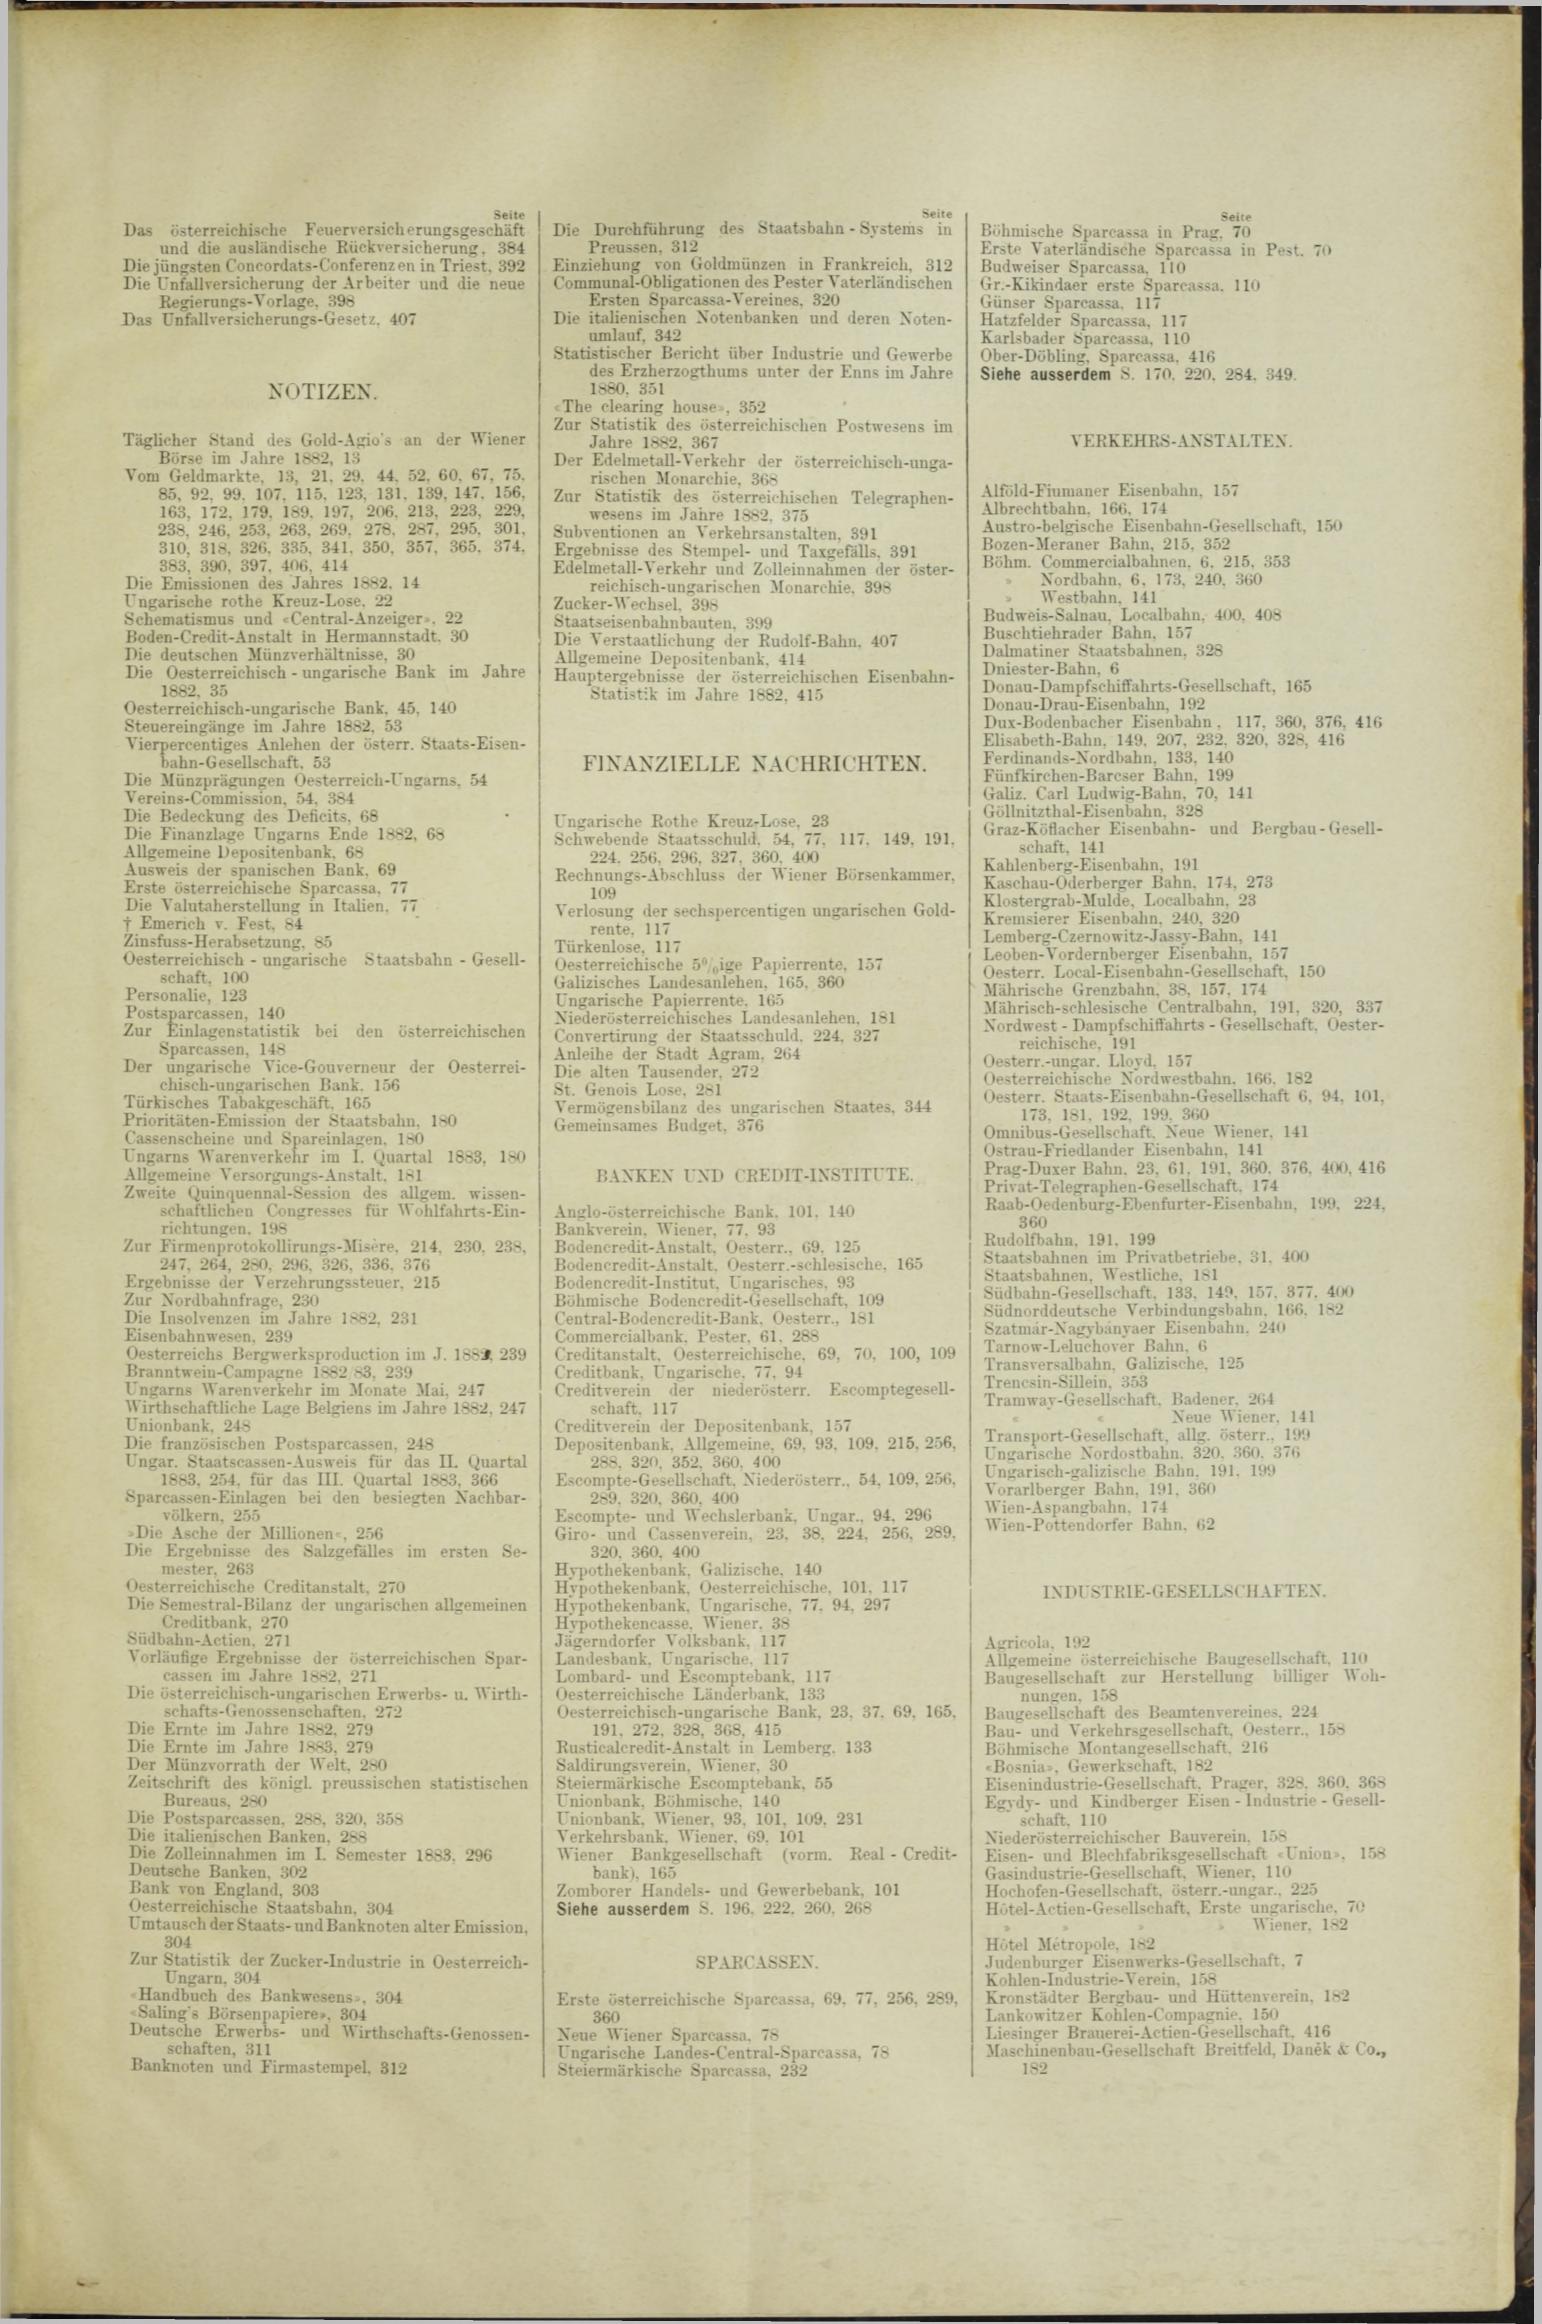 Der Tresor 29.03.1883 - Seite 11